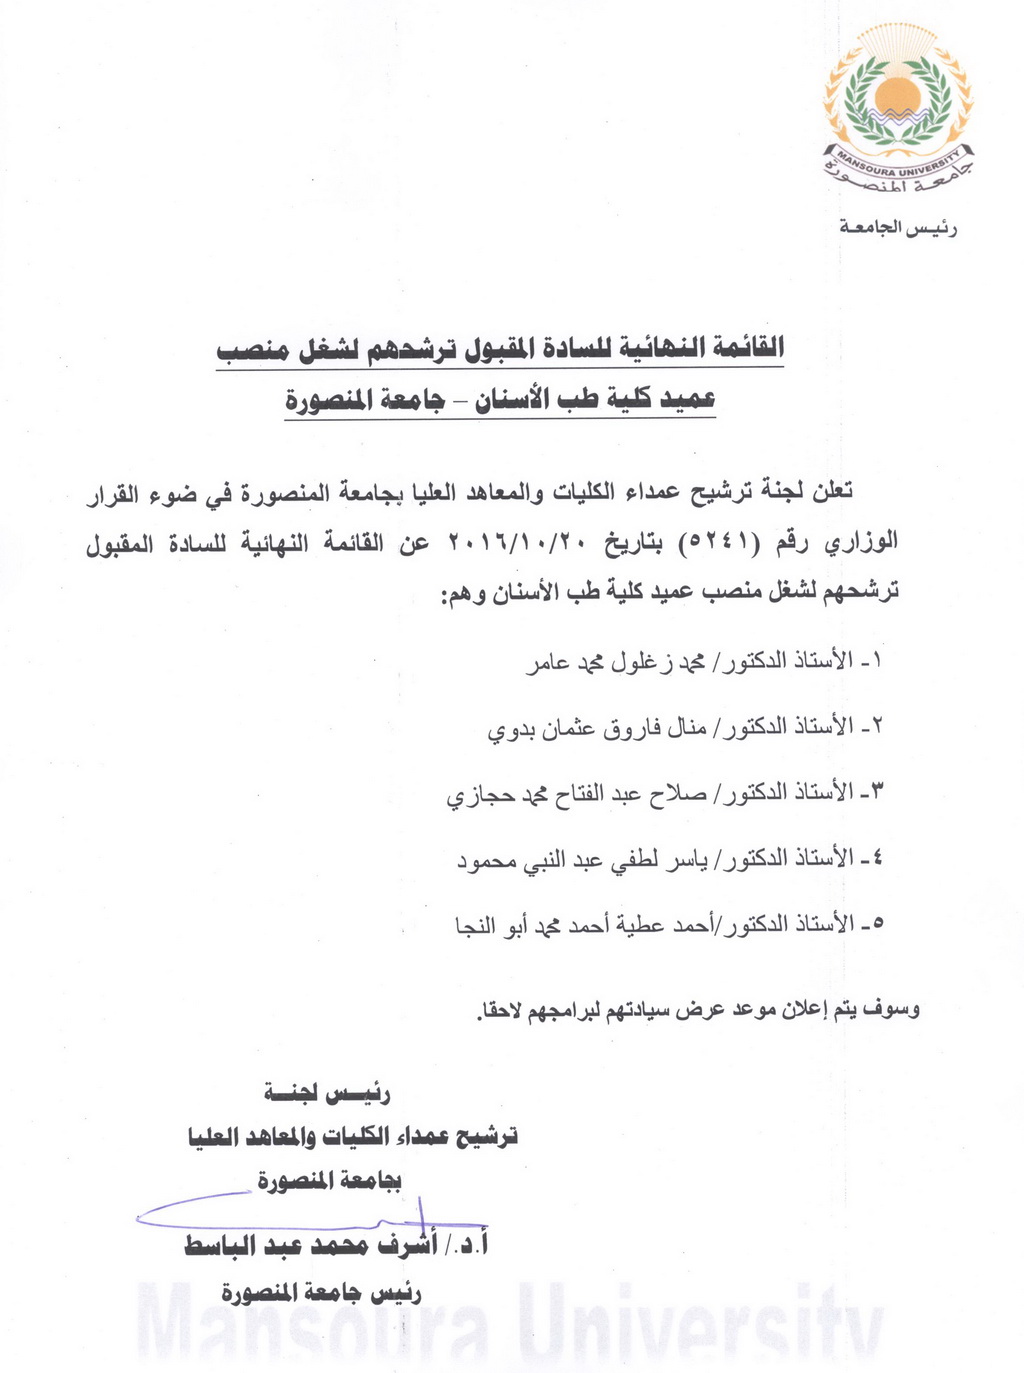 القائمة النهائية للسادة المقبول ترشيحهم لشغل منصب عميد كلية طب الأسنان - جامعة المنصورة